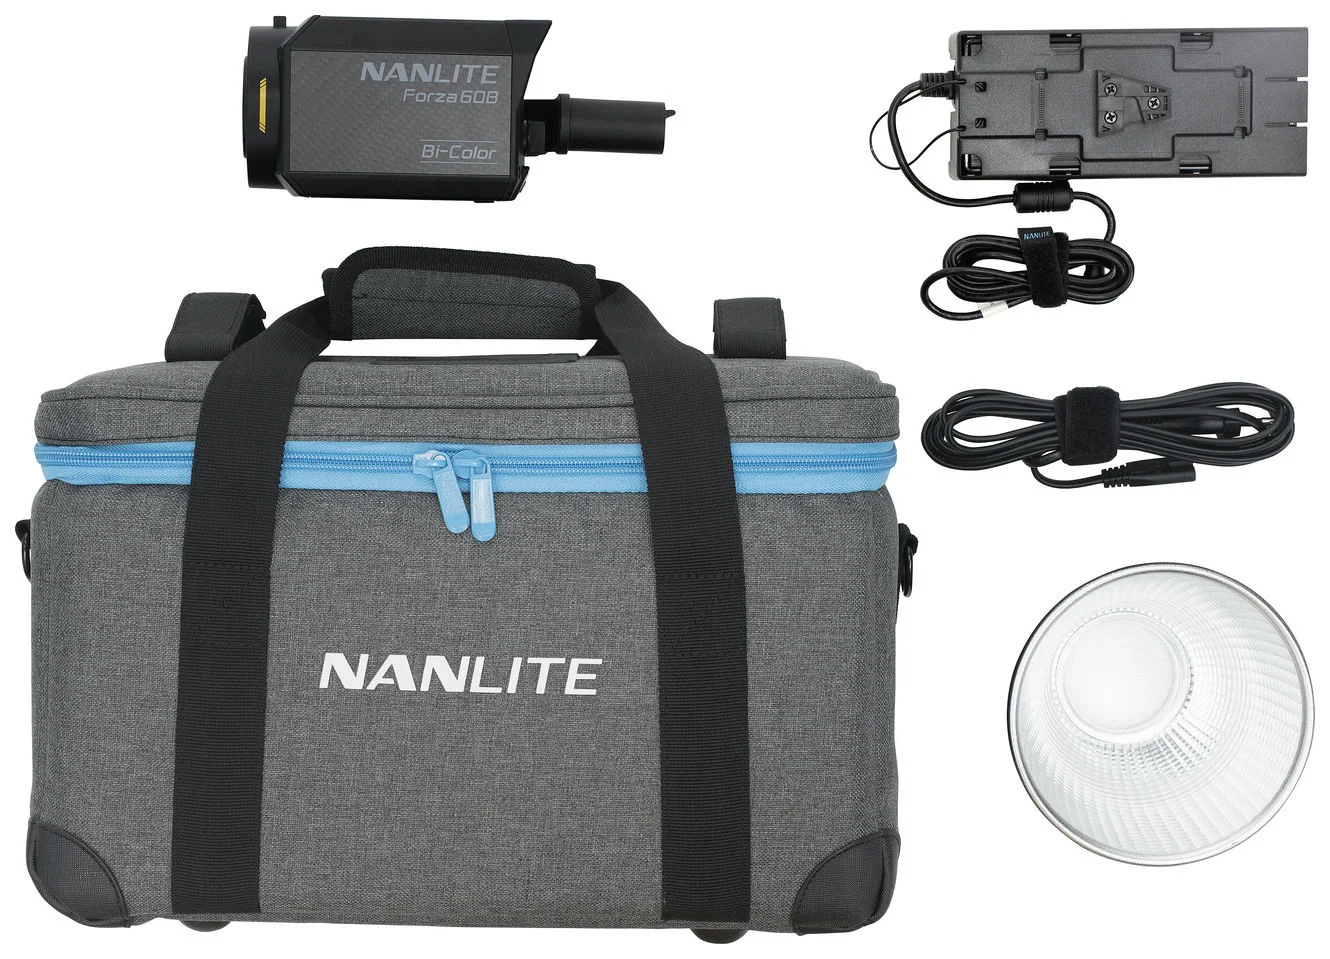 Nanlite Forza 60b equipment